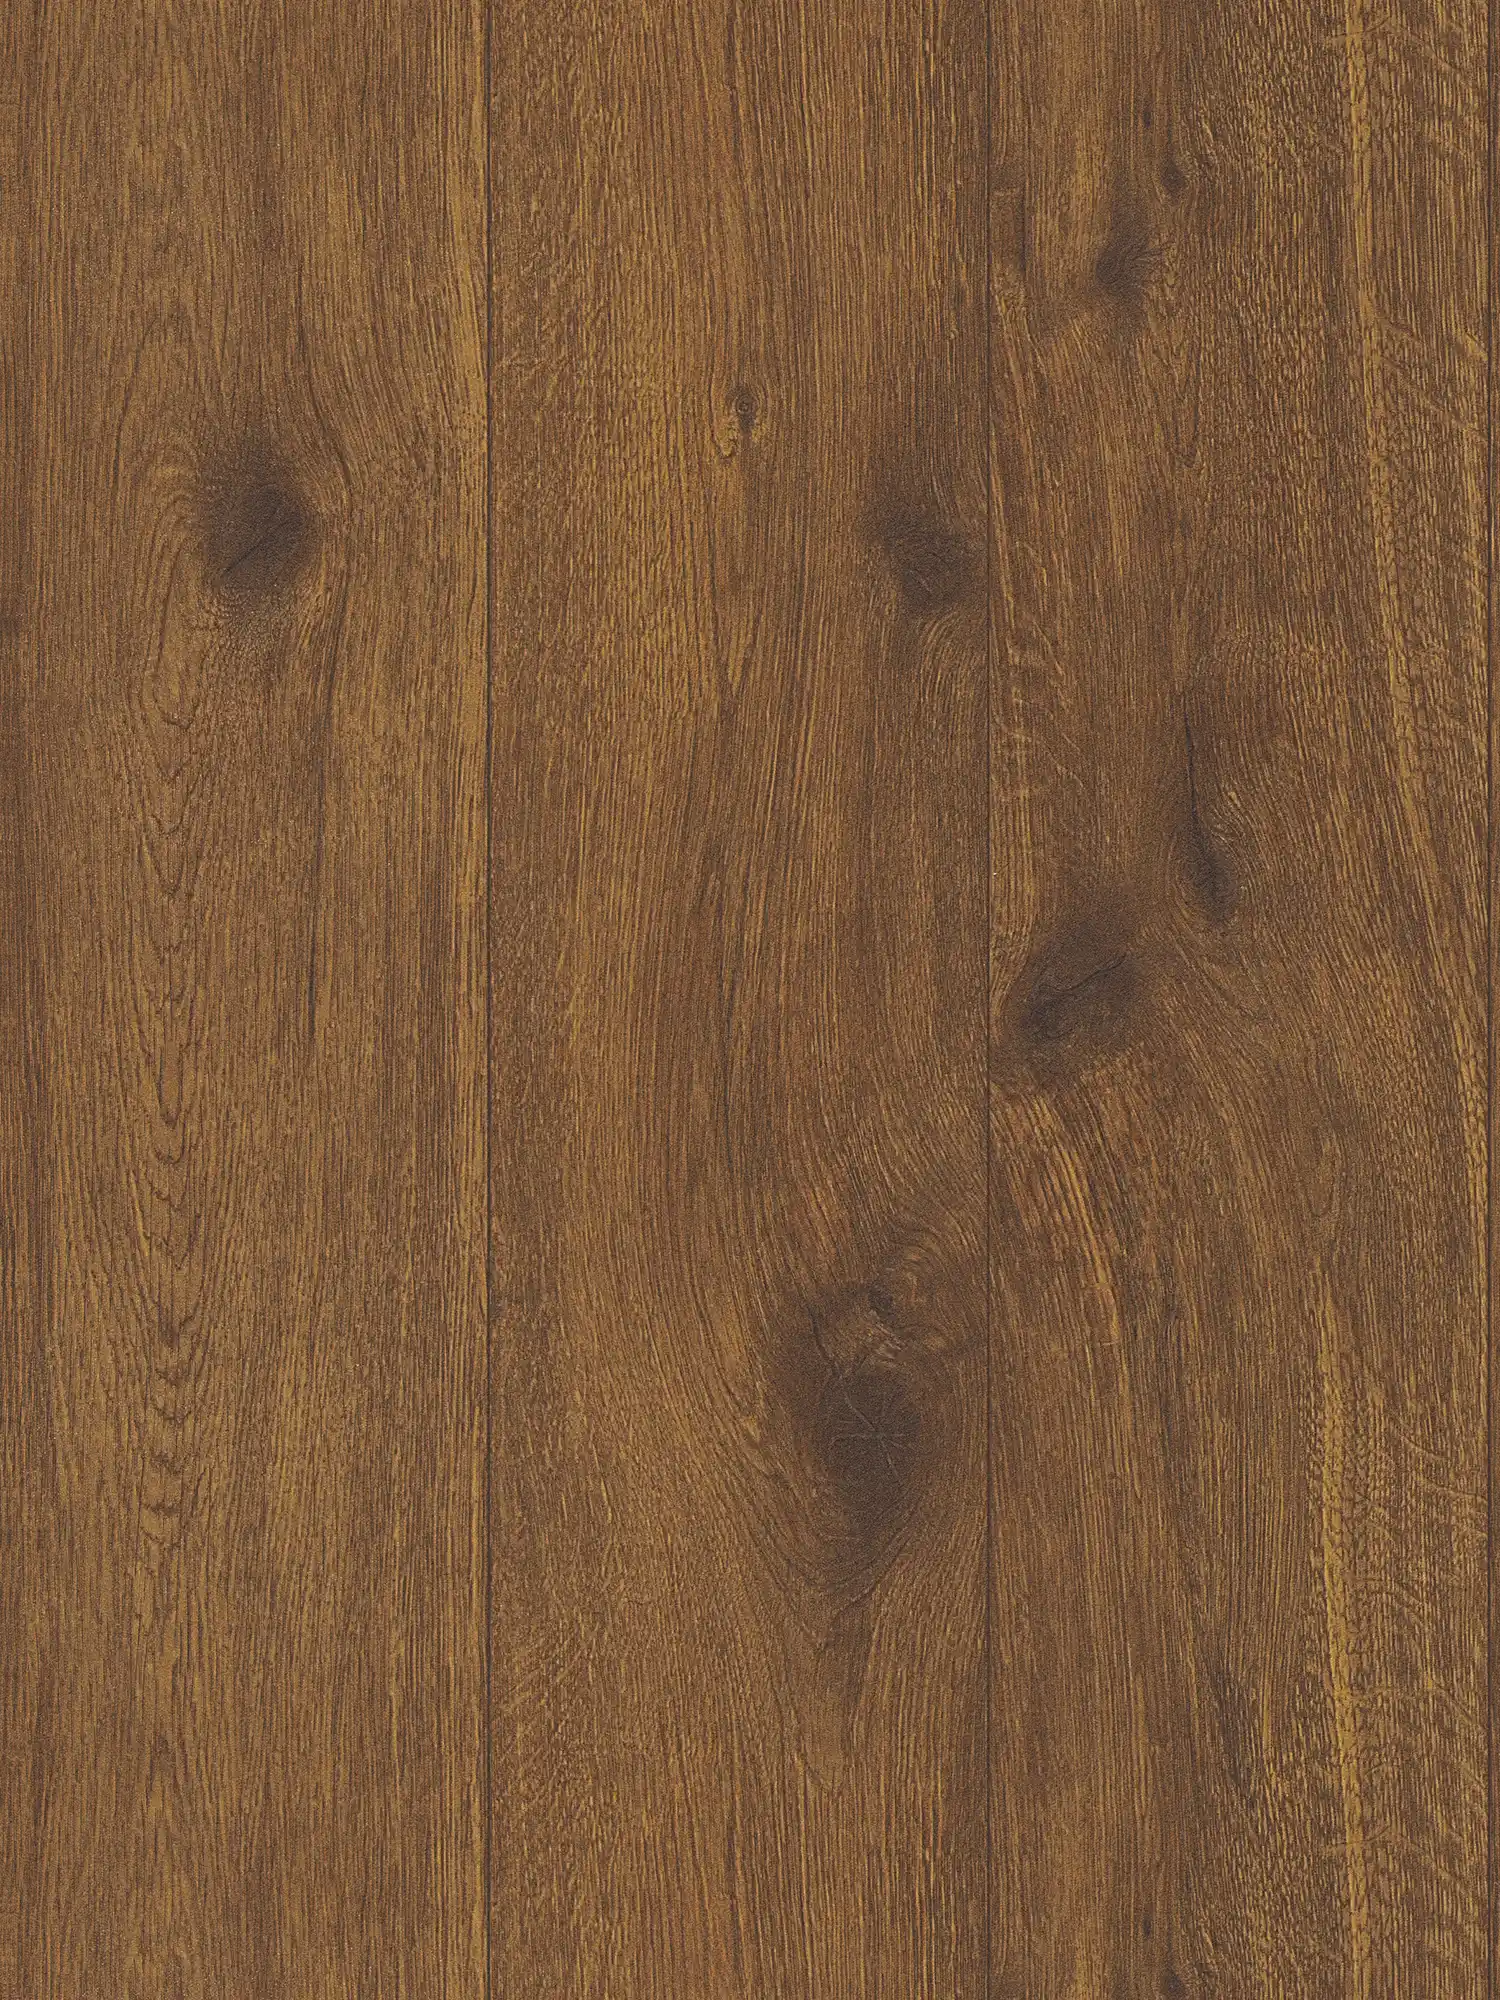 Holzoptik Tapete mit natürlicher Holzmaserung – Braun
